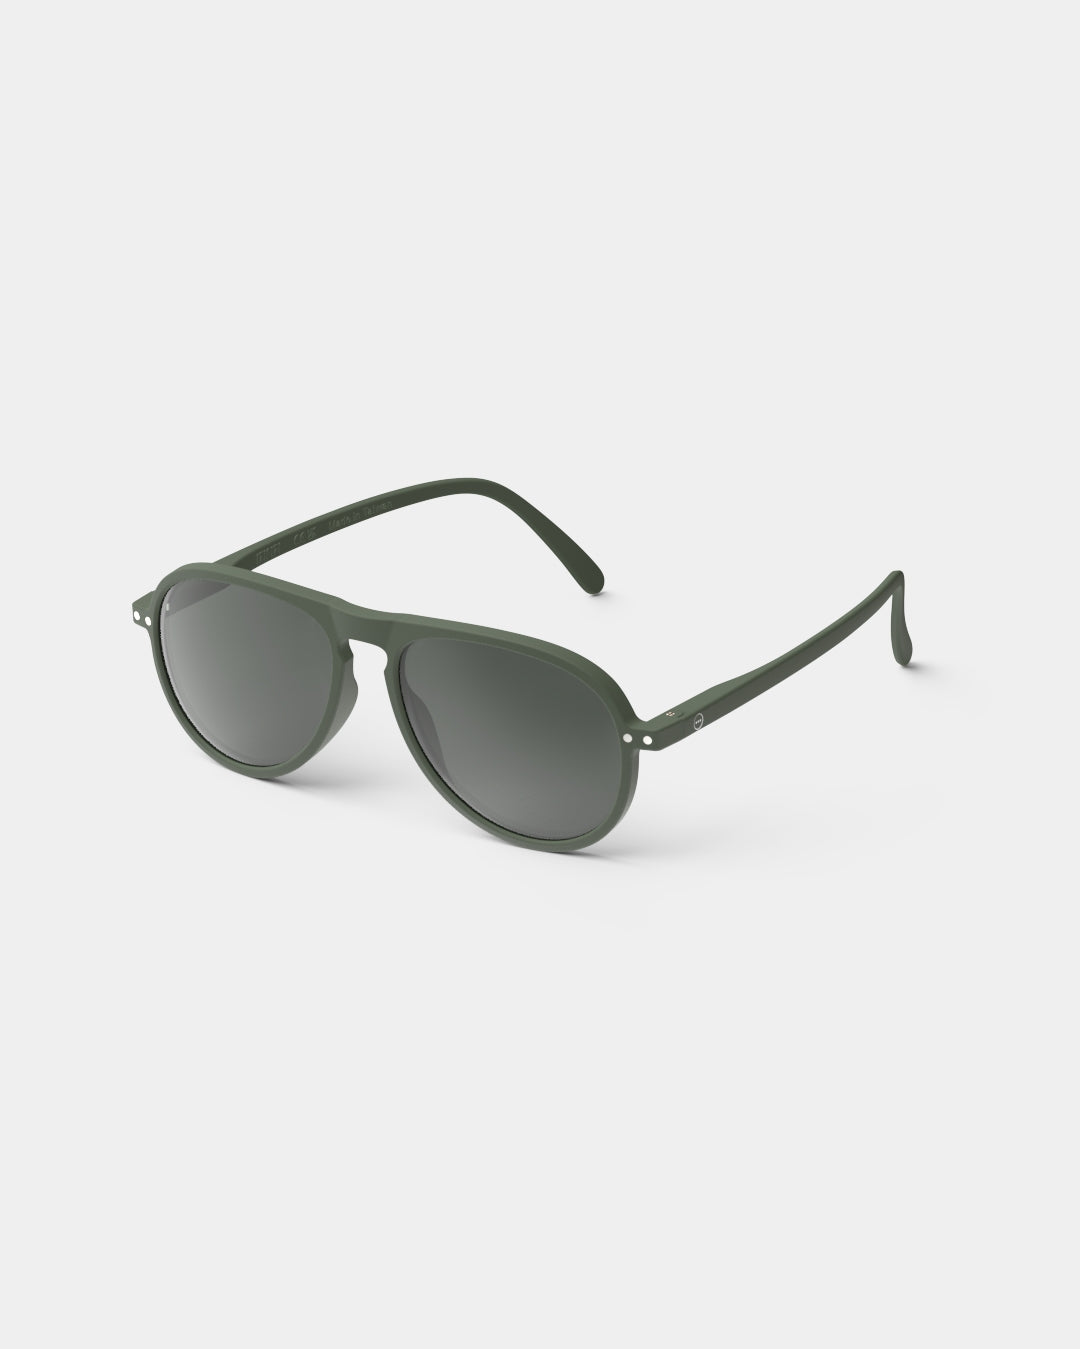 
                  
                    Gafas de sol #I - Kaki Green
                  
                